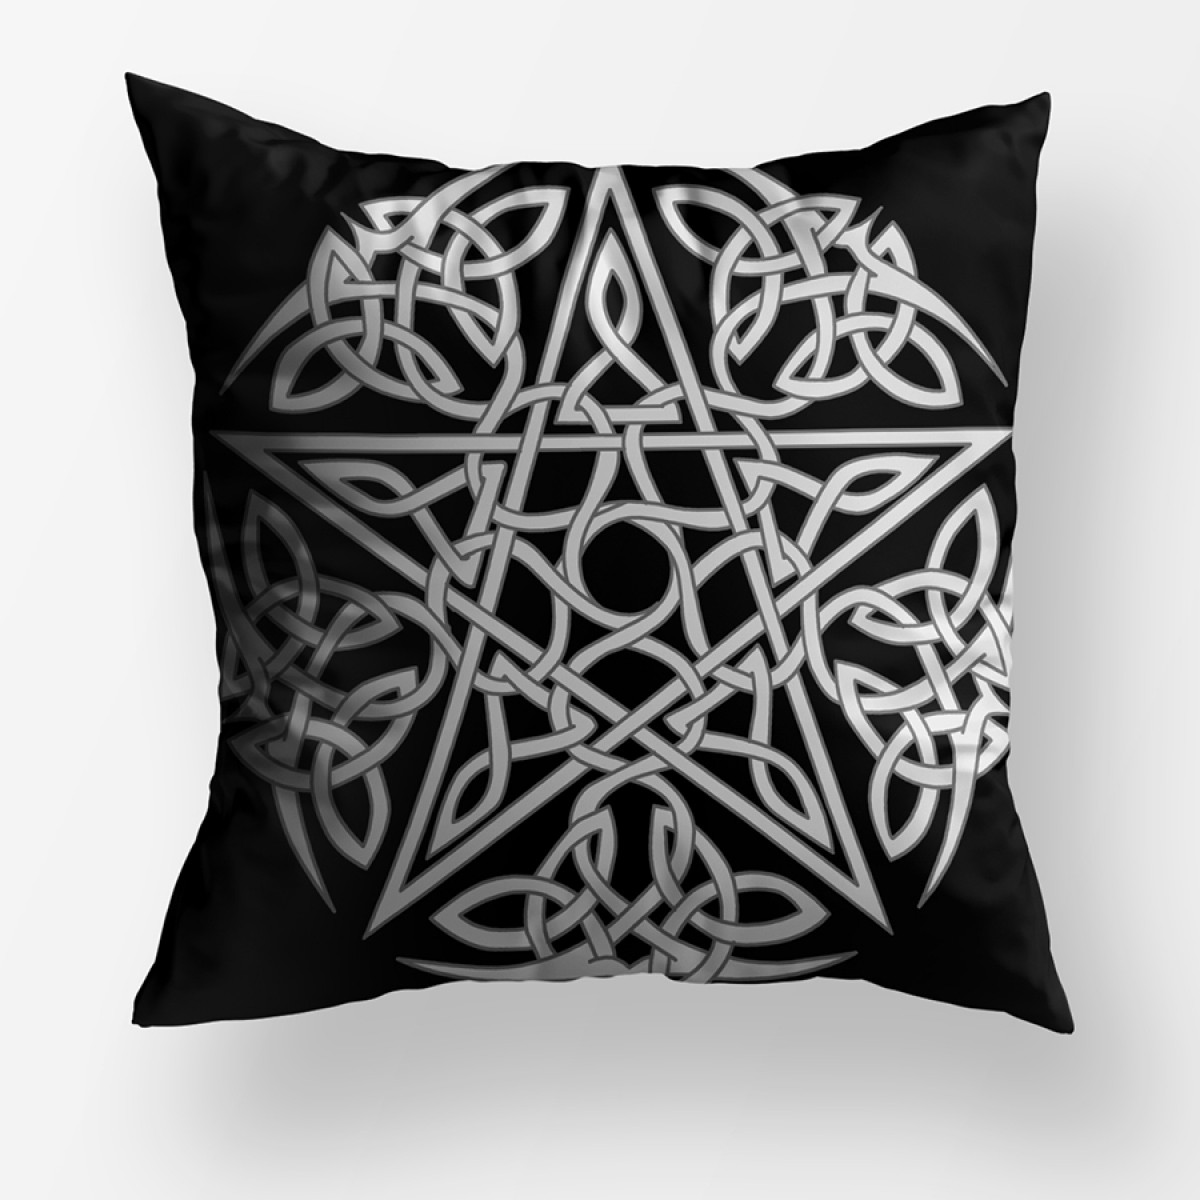 Pentagram Dekoratif Kare Yastık